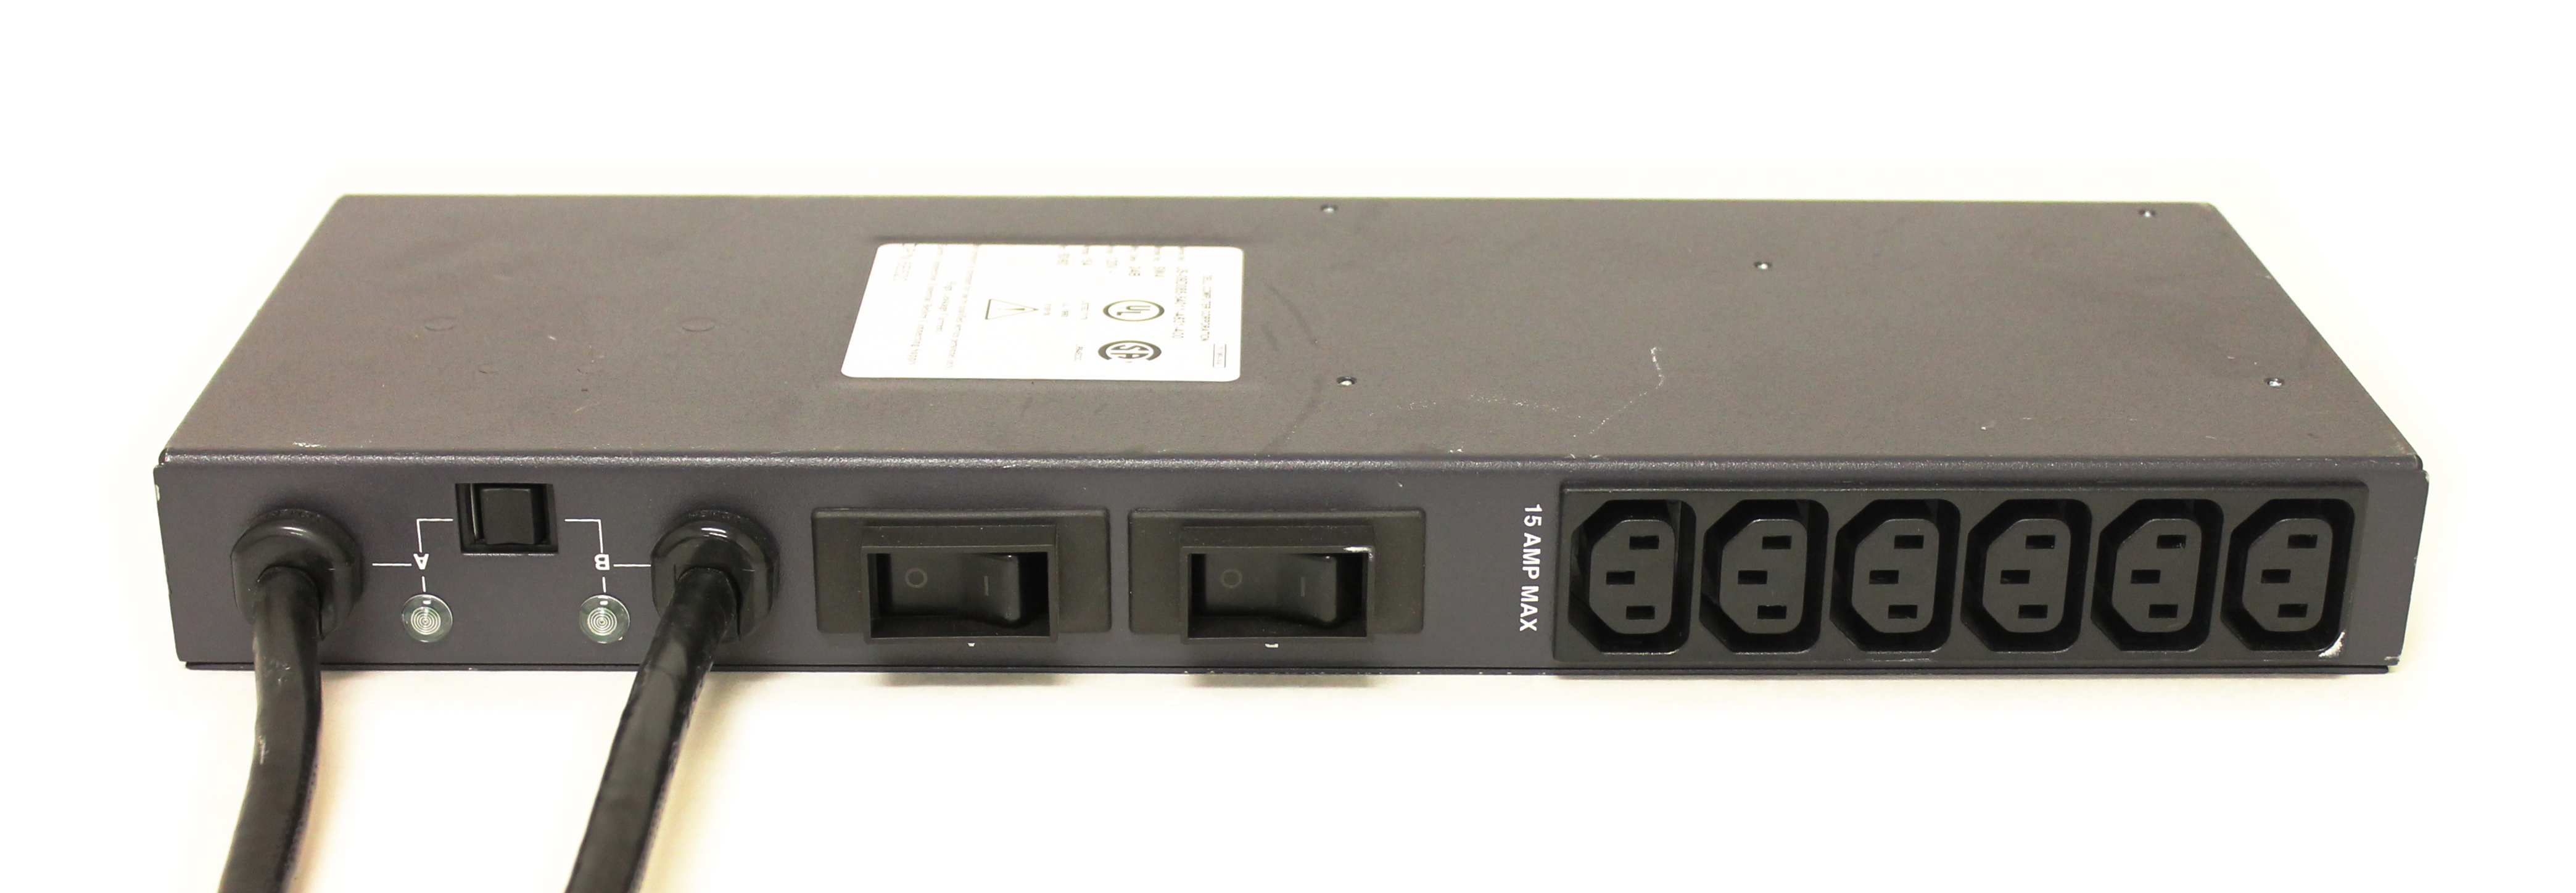 Dell PDU Power Distribution Unit SWA UPS 120V 15A 50/60Hz 6E520 9D085